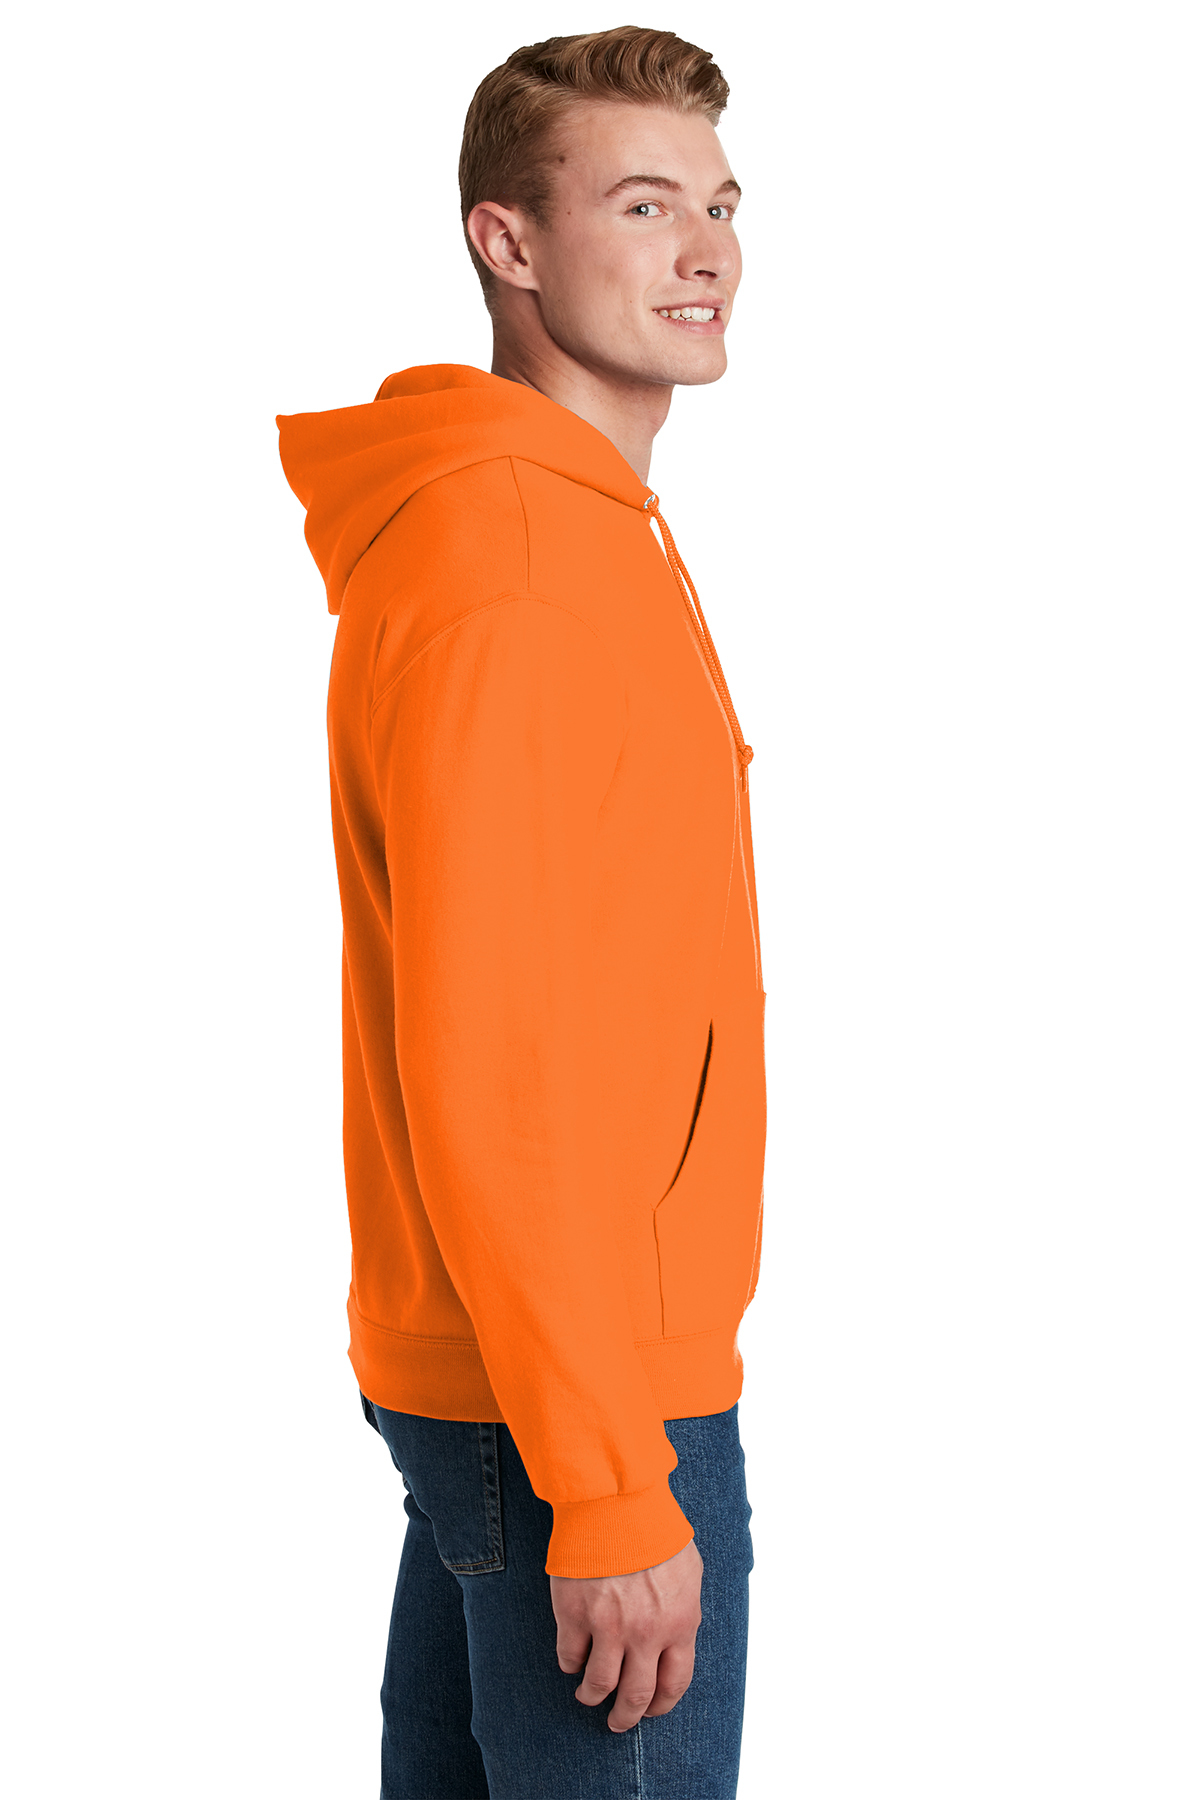 Safety Orange XX-Large Jerzees 8 oz NuBlend 50/50 Pullover Hood